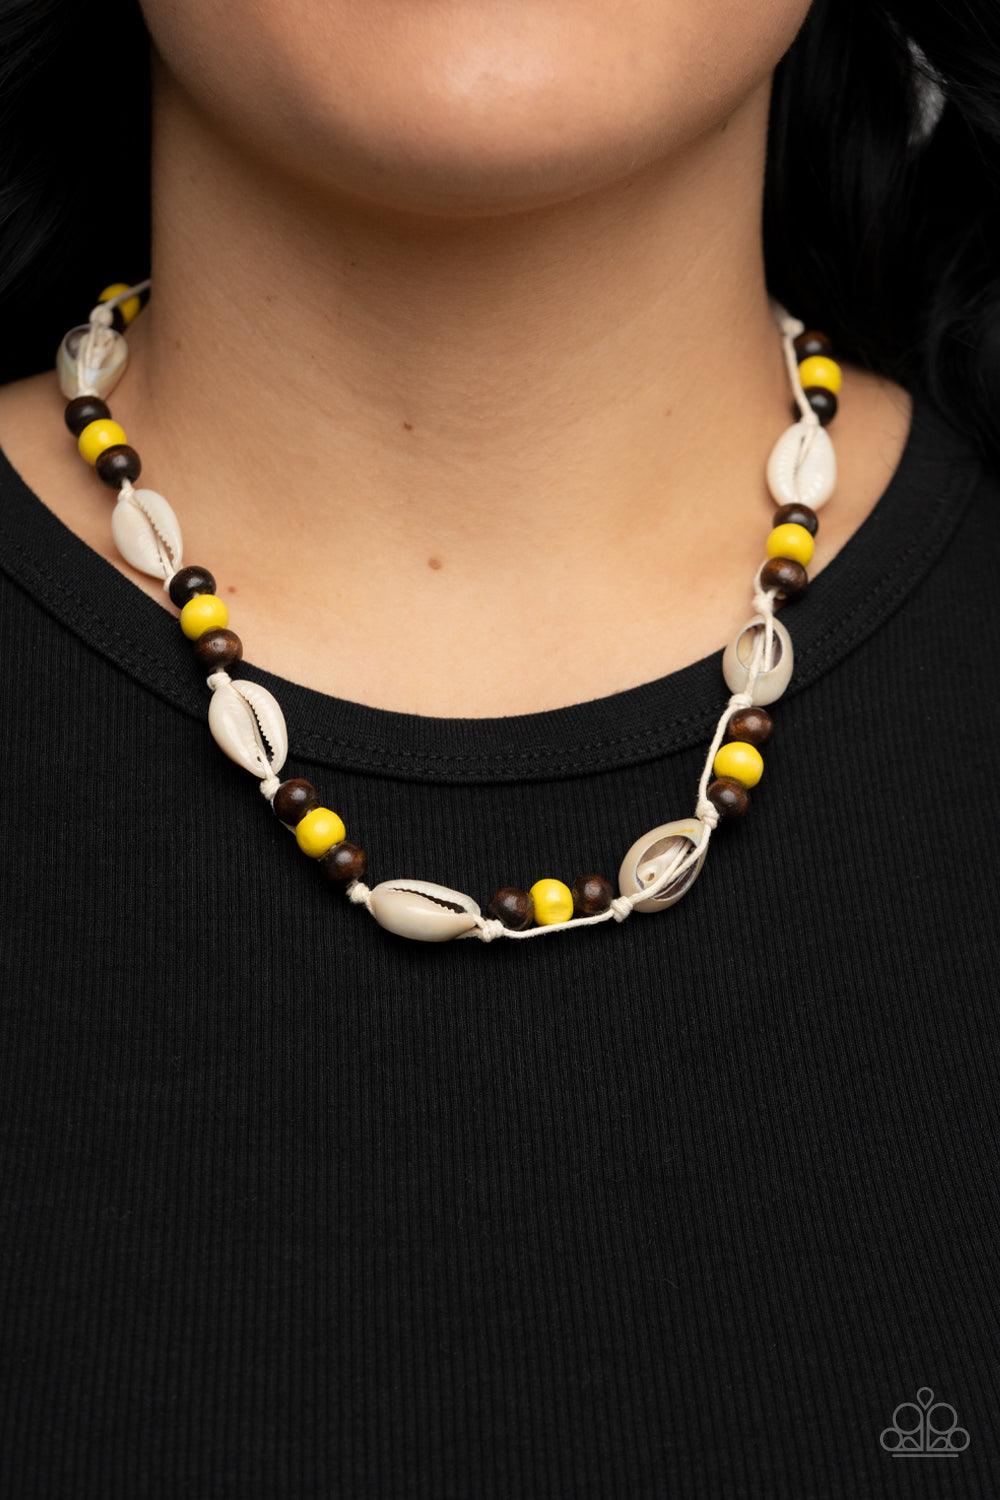 Bermuda Beachcomber Yellow Necklace - Jewelry by Bretta - Jewelry by Bretta